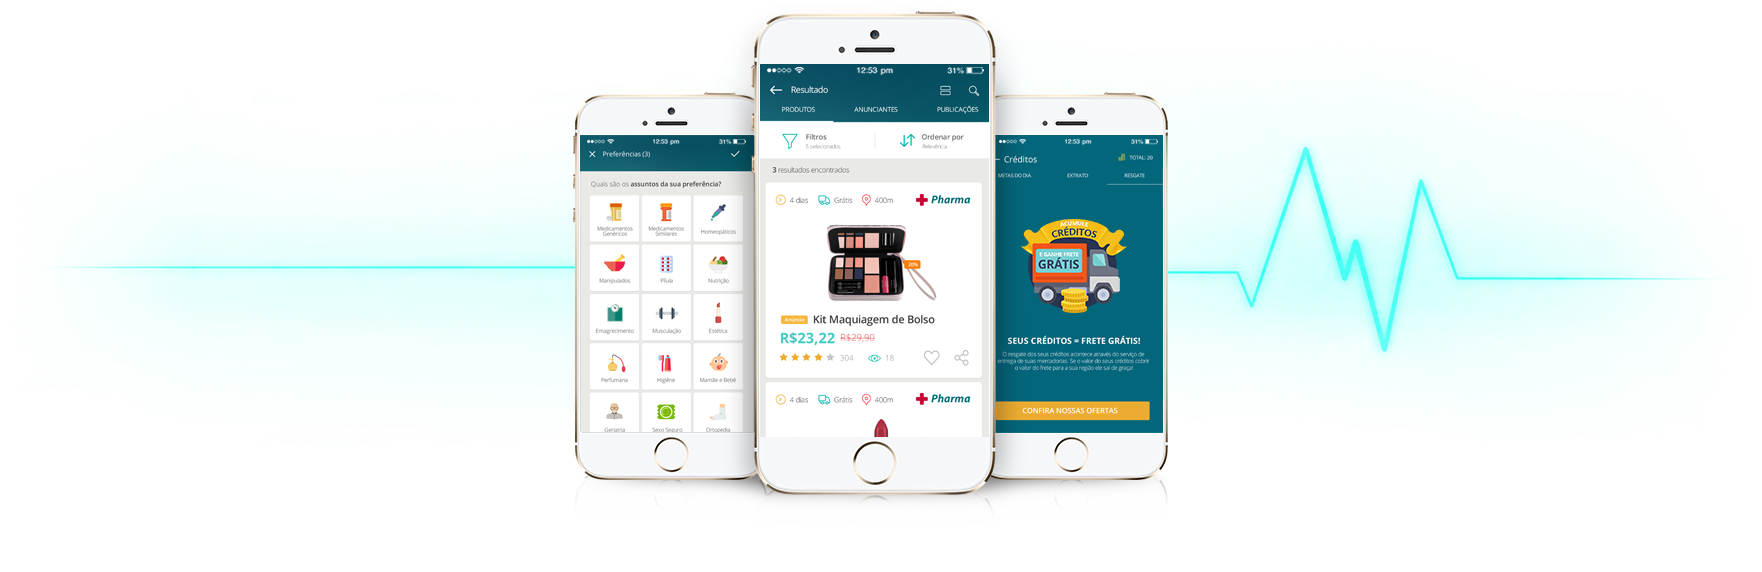 Aplicativo mostra ofertas e compras on-line de produtos de saúde e beleza